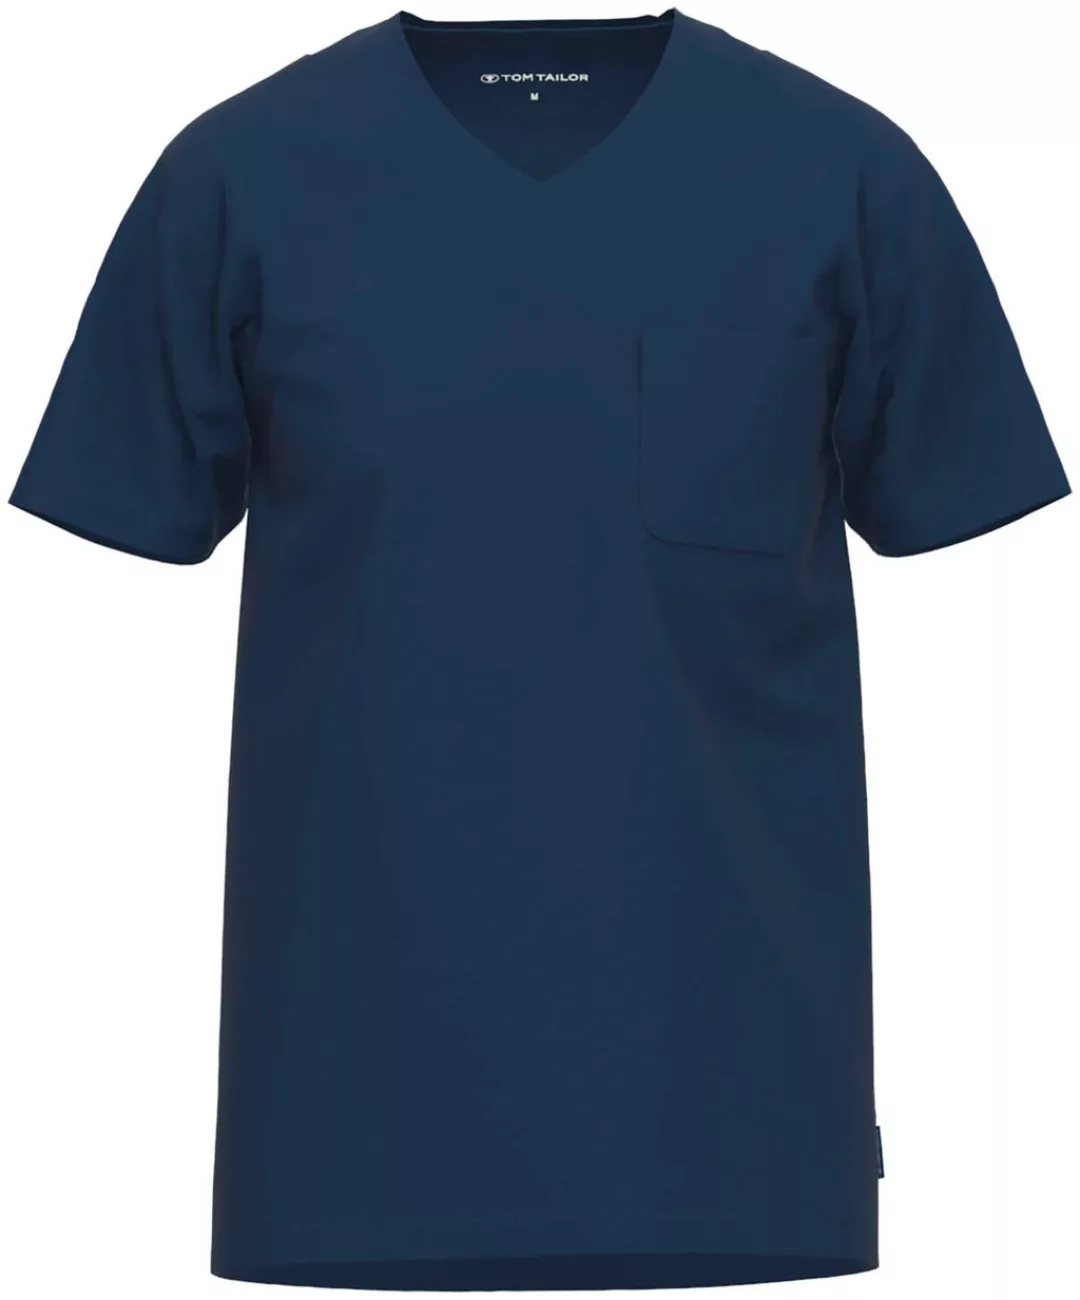 TOM TAILOR T-Shirt Cansas mit angenehmen Basic-Fit günstig online kaufen